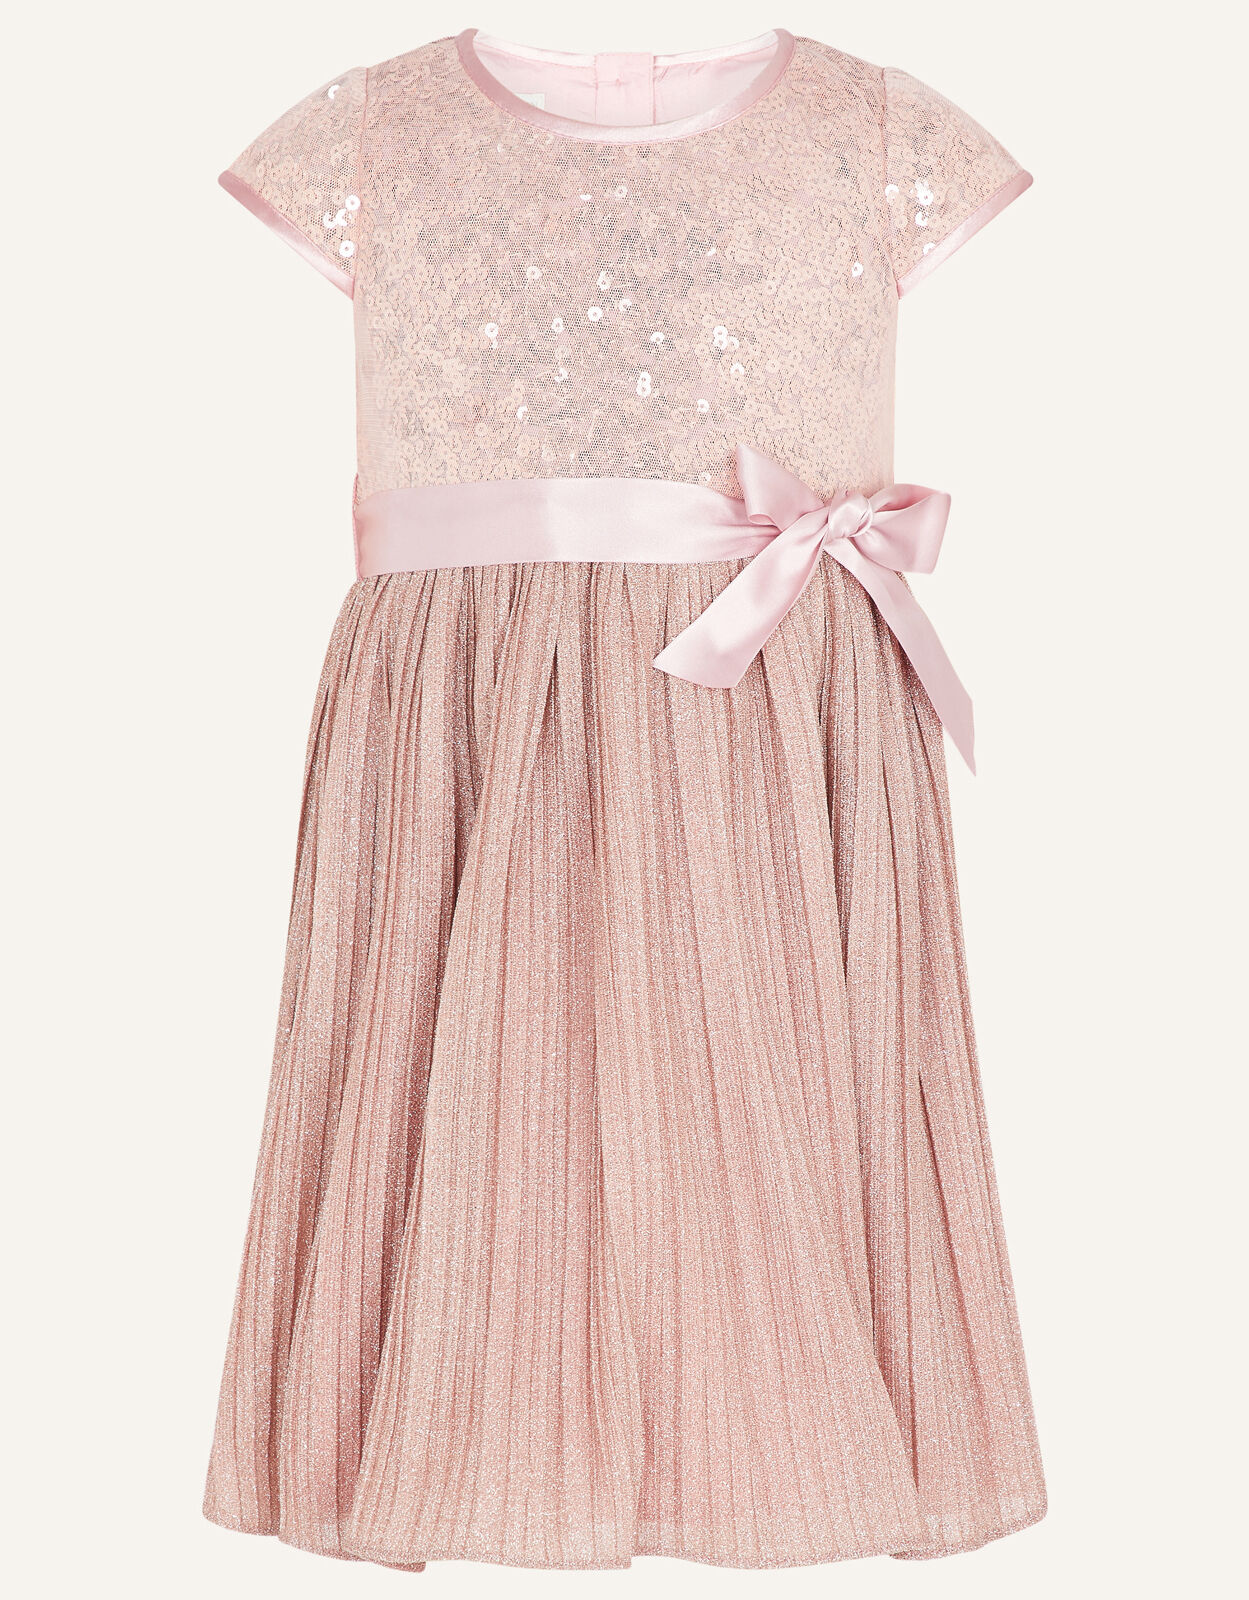 Baby Sequin Dress Pink | Baby Girl ...